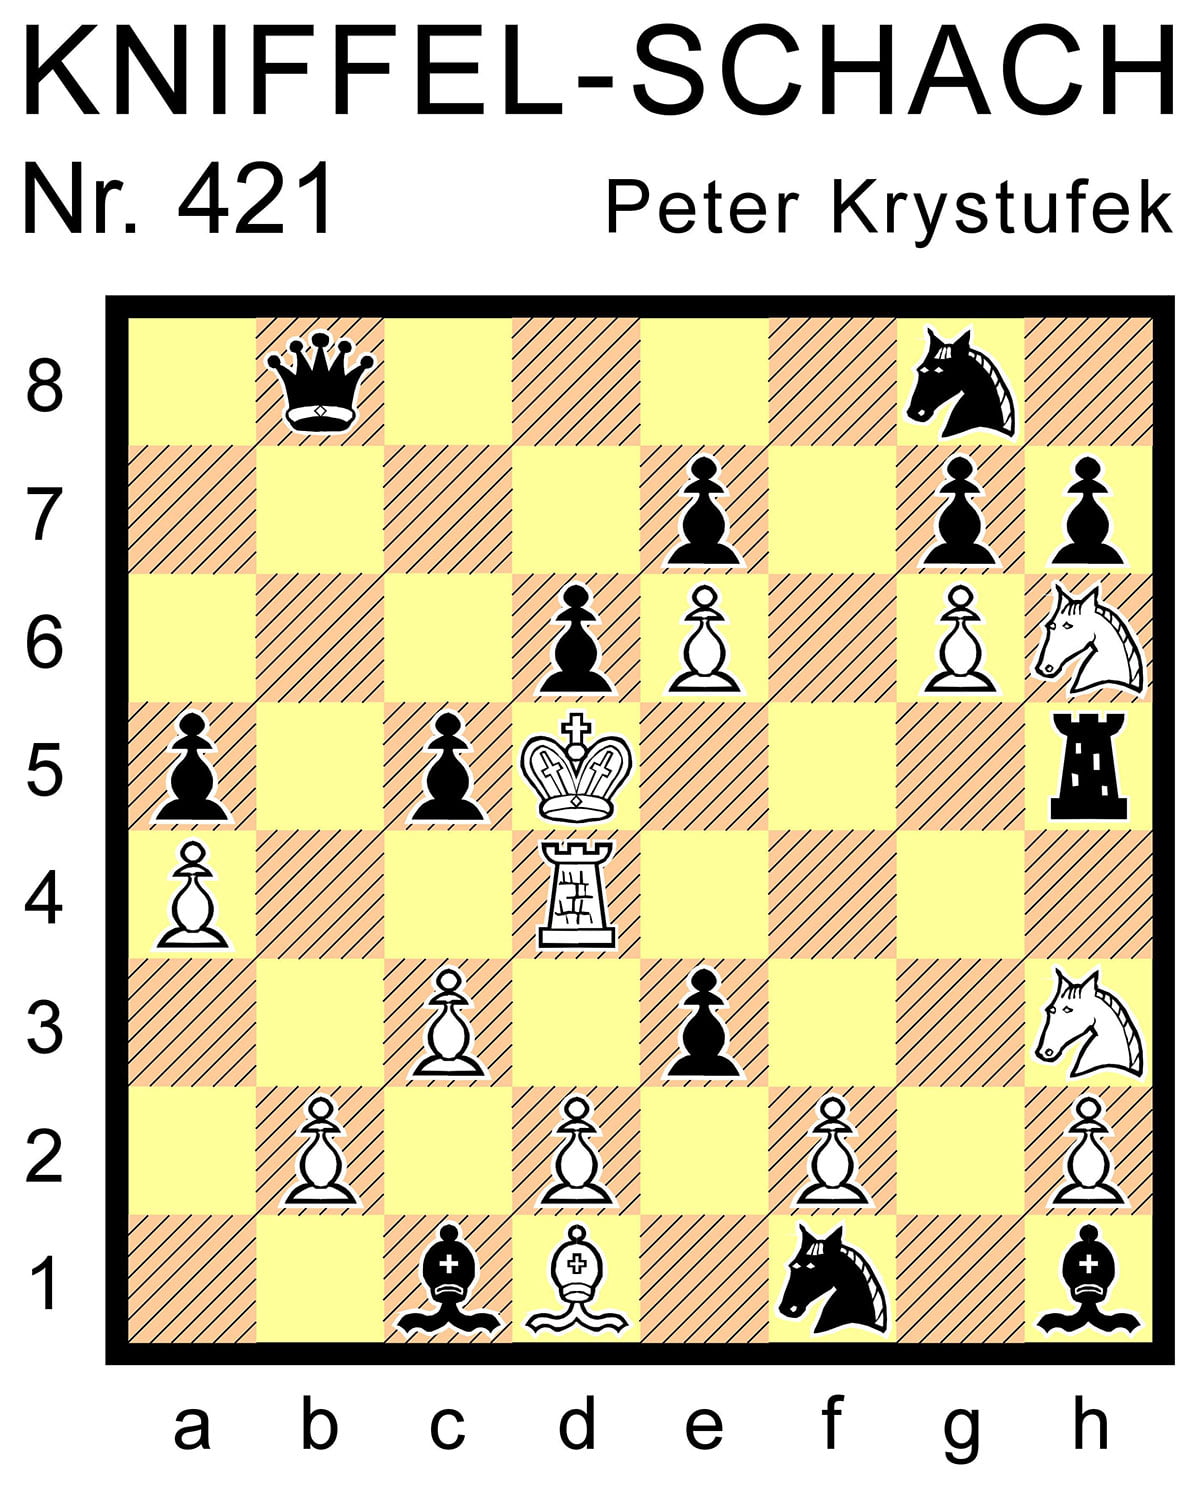 Kniffel-Schach Nr. 421